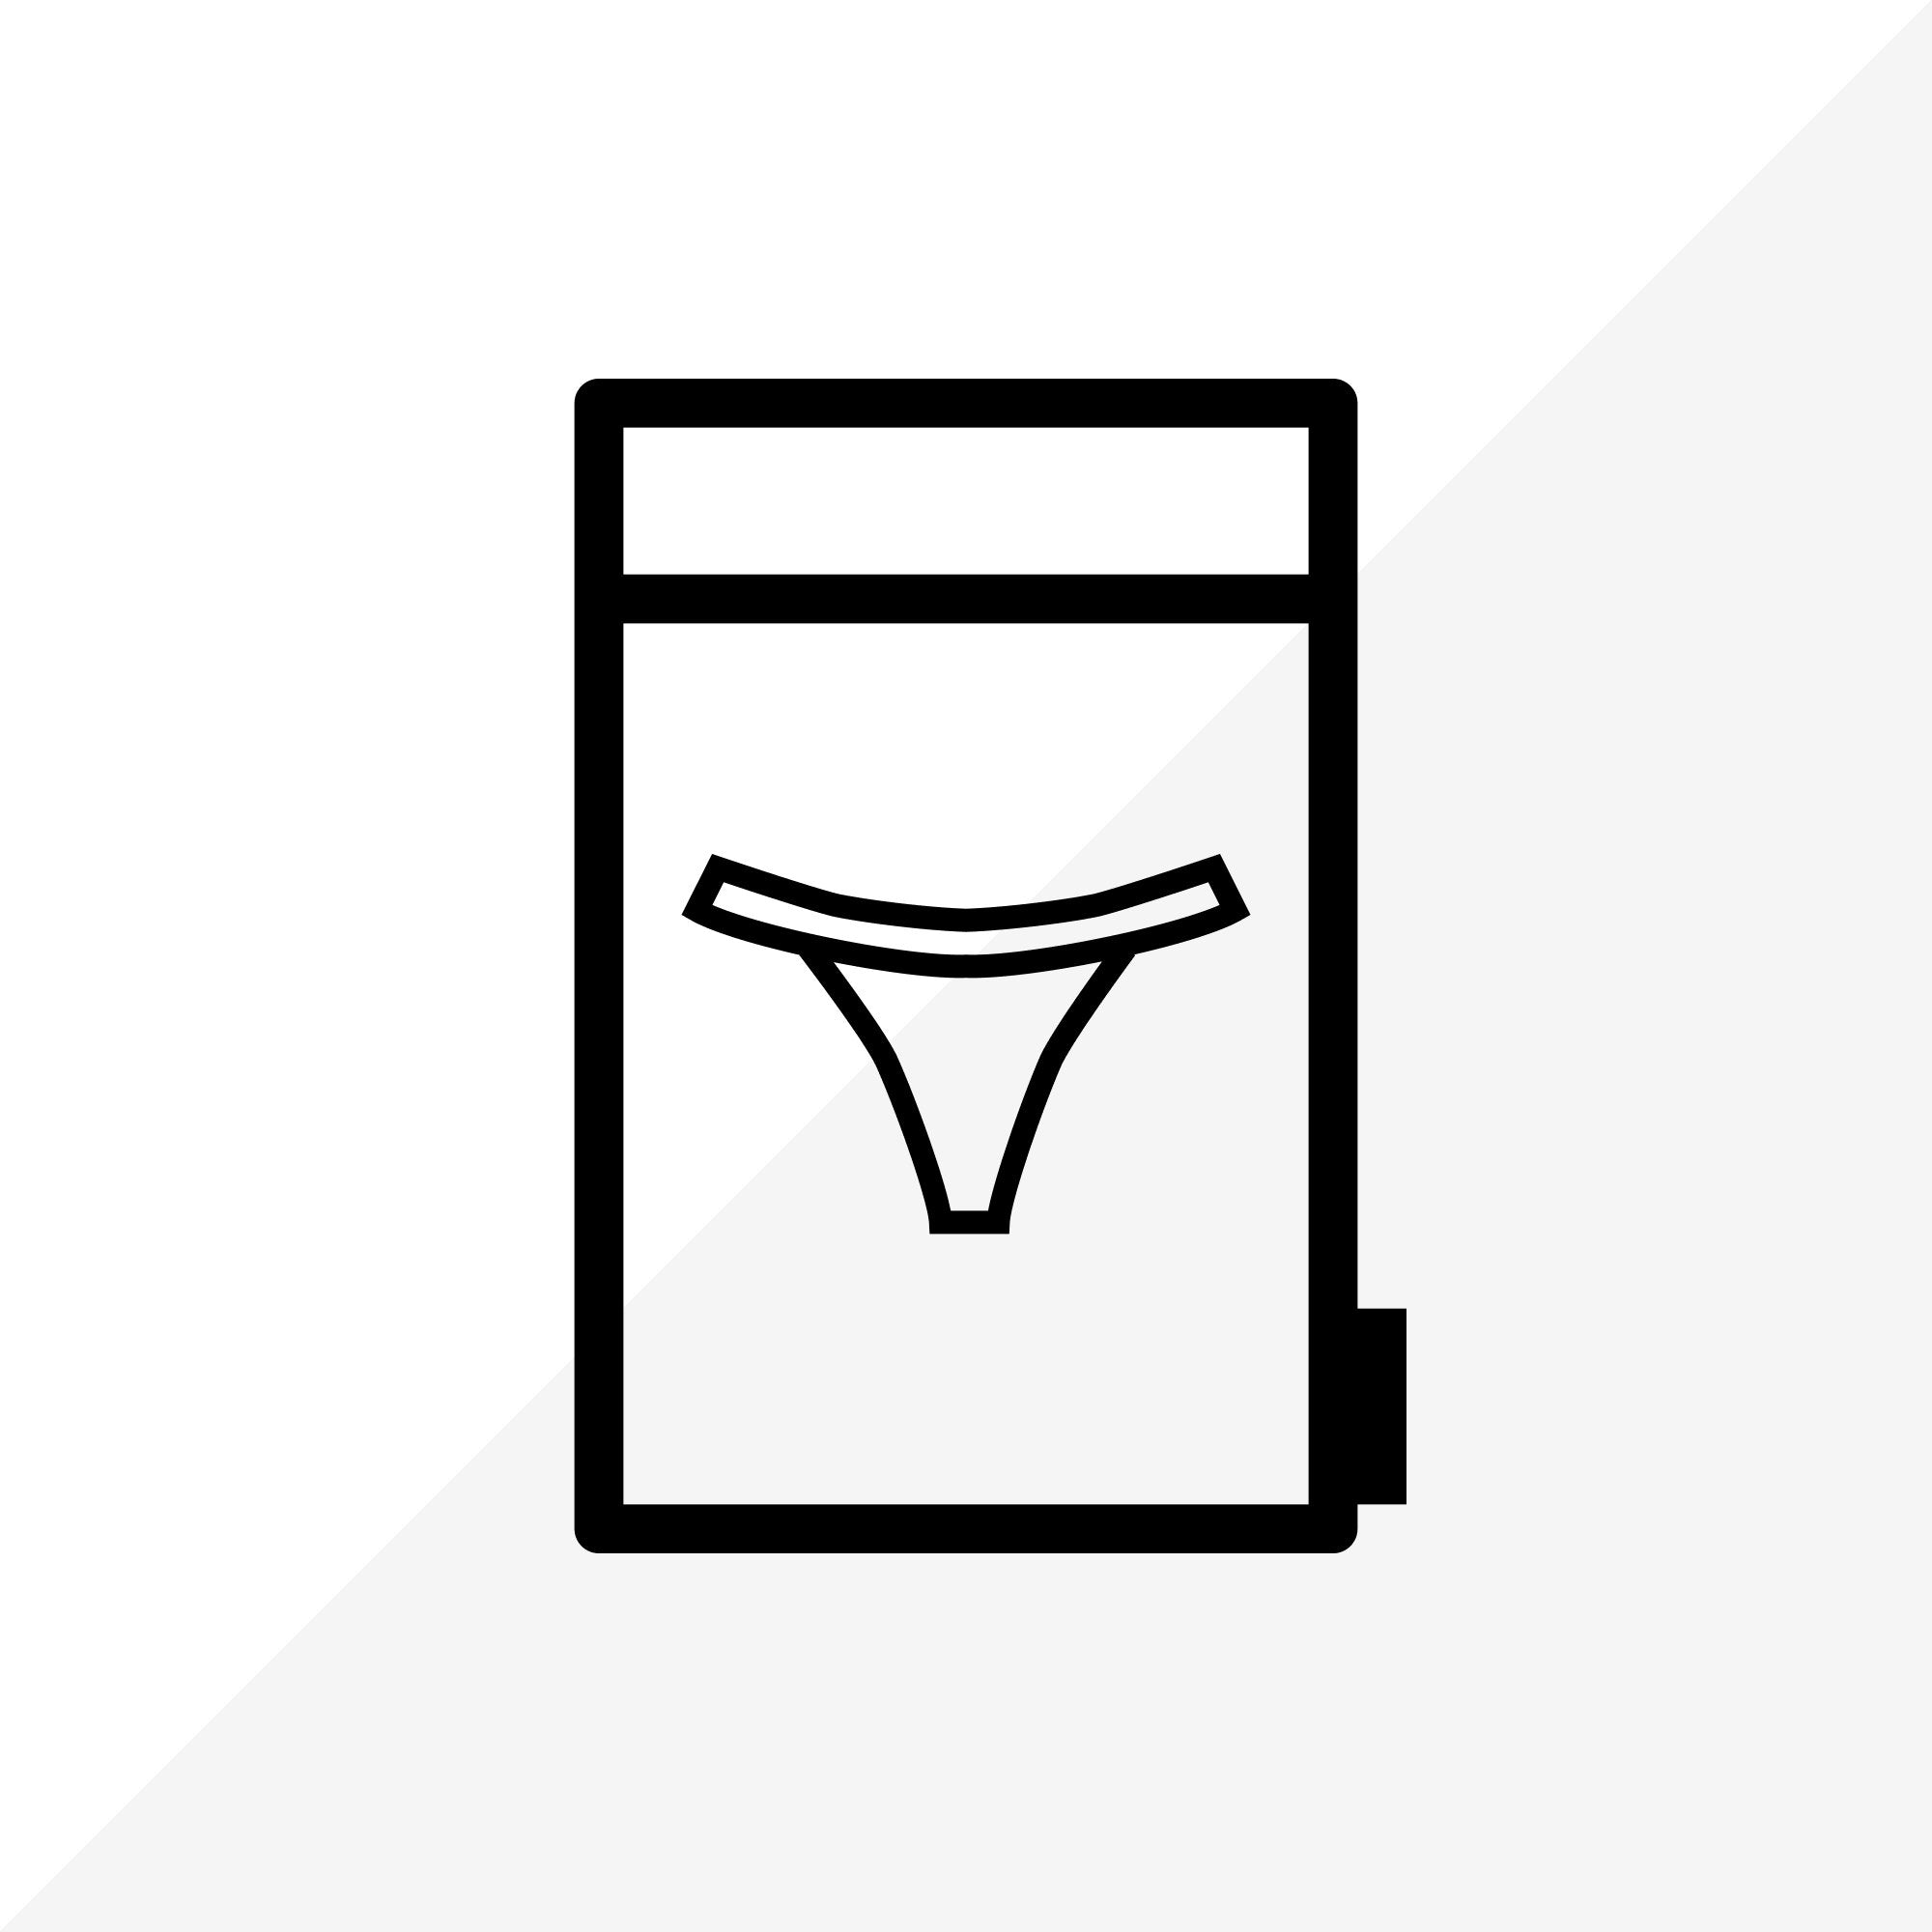 Underwear Care Bag – Lounge Underwear